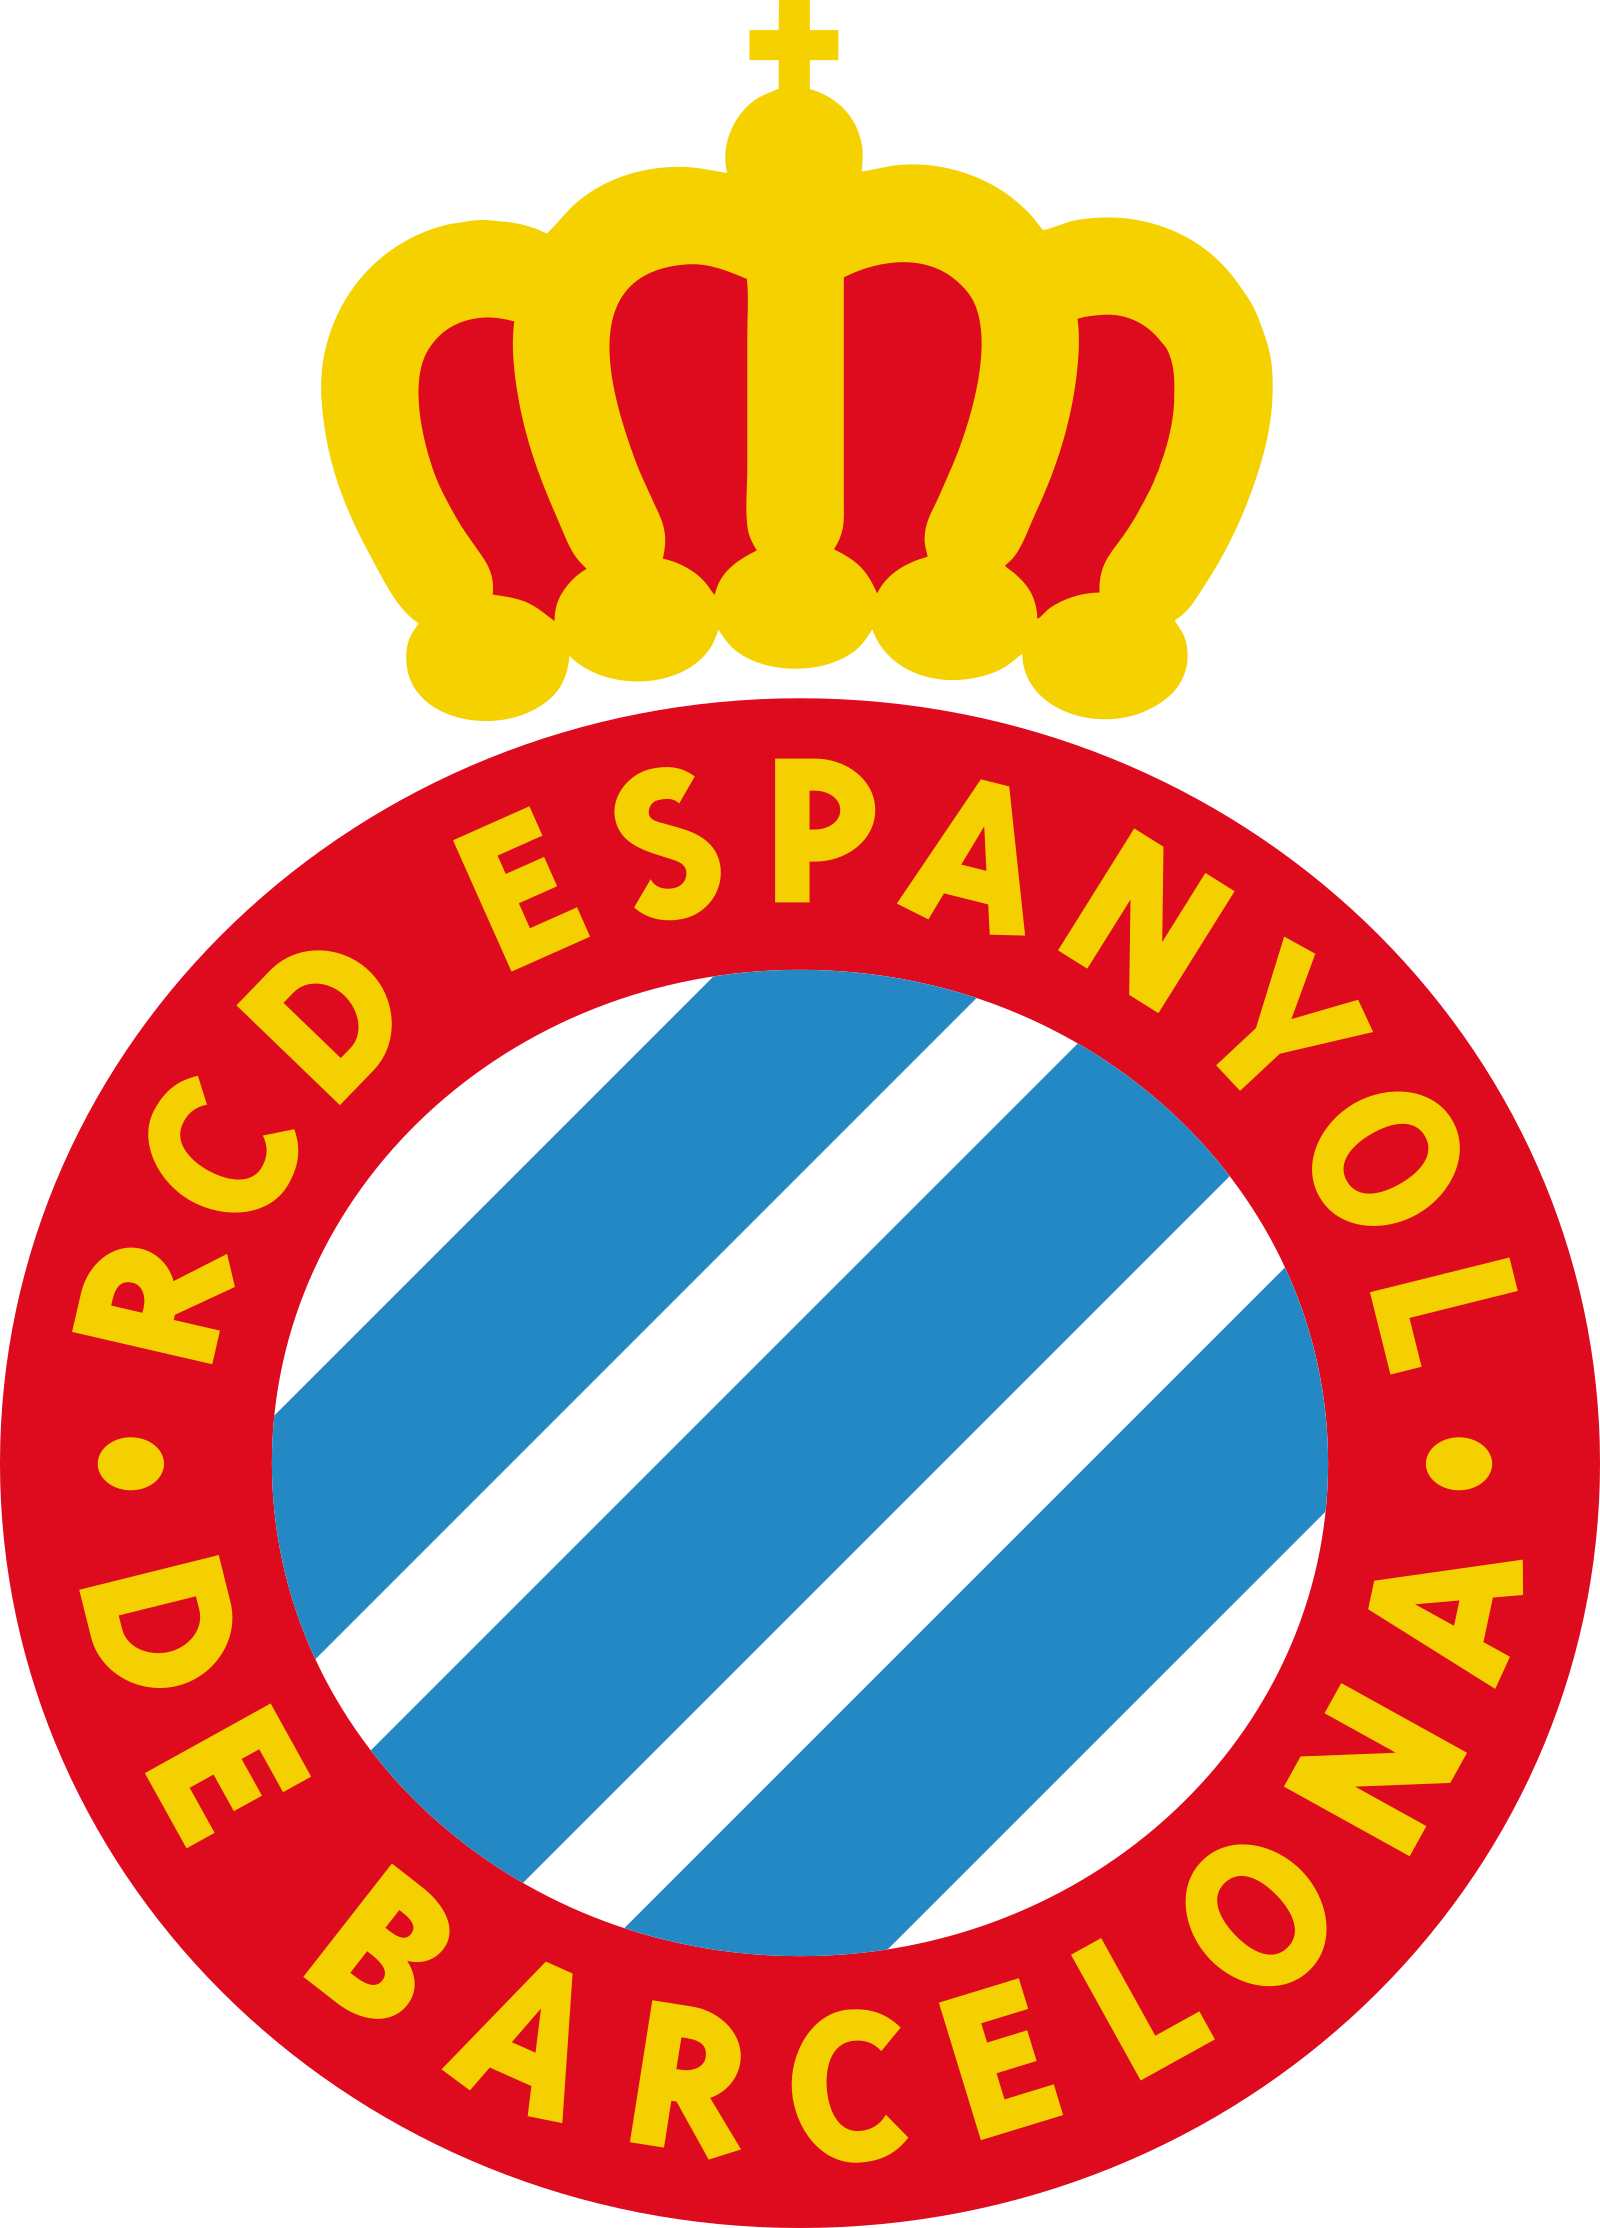 rcd espanyol logo escudo 2 - Espanyol Logo - Escudo Real Club Deportivo Espanyol